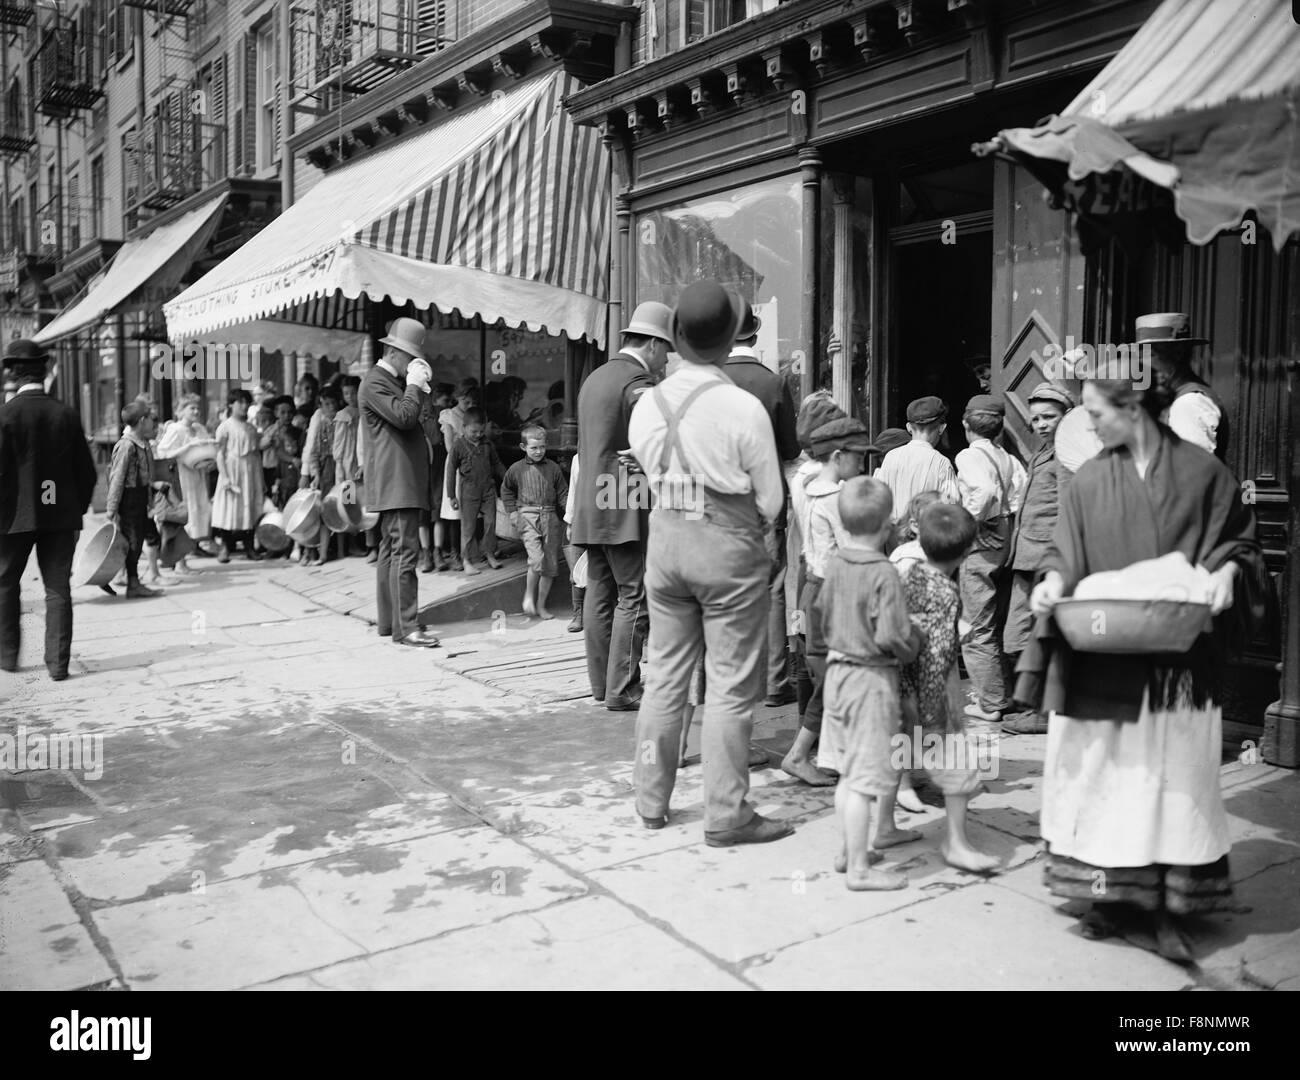 Gruppe von Menschen in der Schlange, kostenlose Eis, New York City, New York, USA, 1903 erhalten Stockfoto